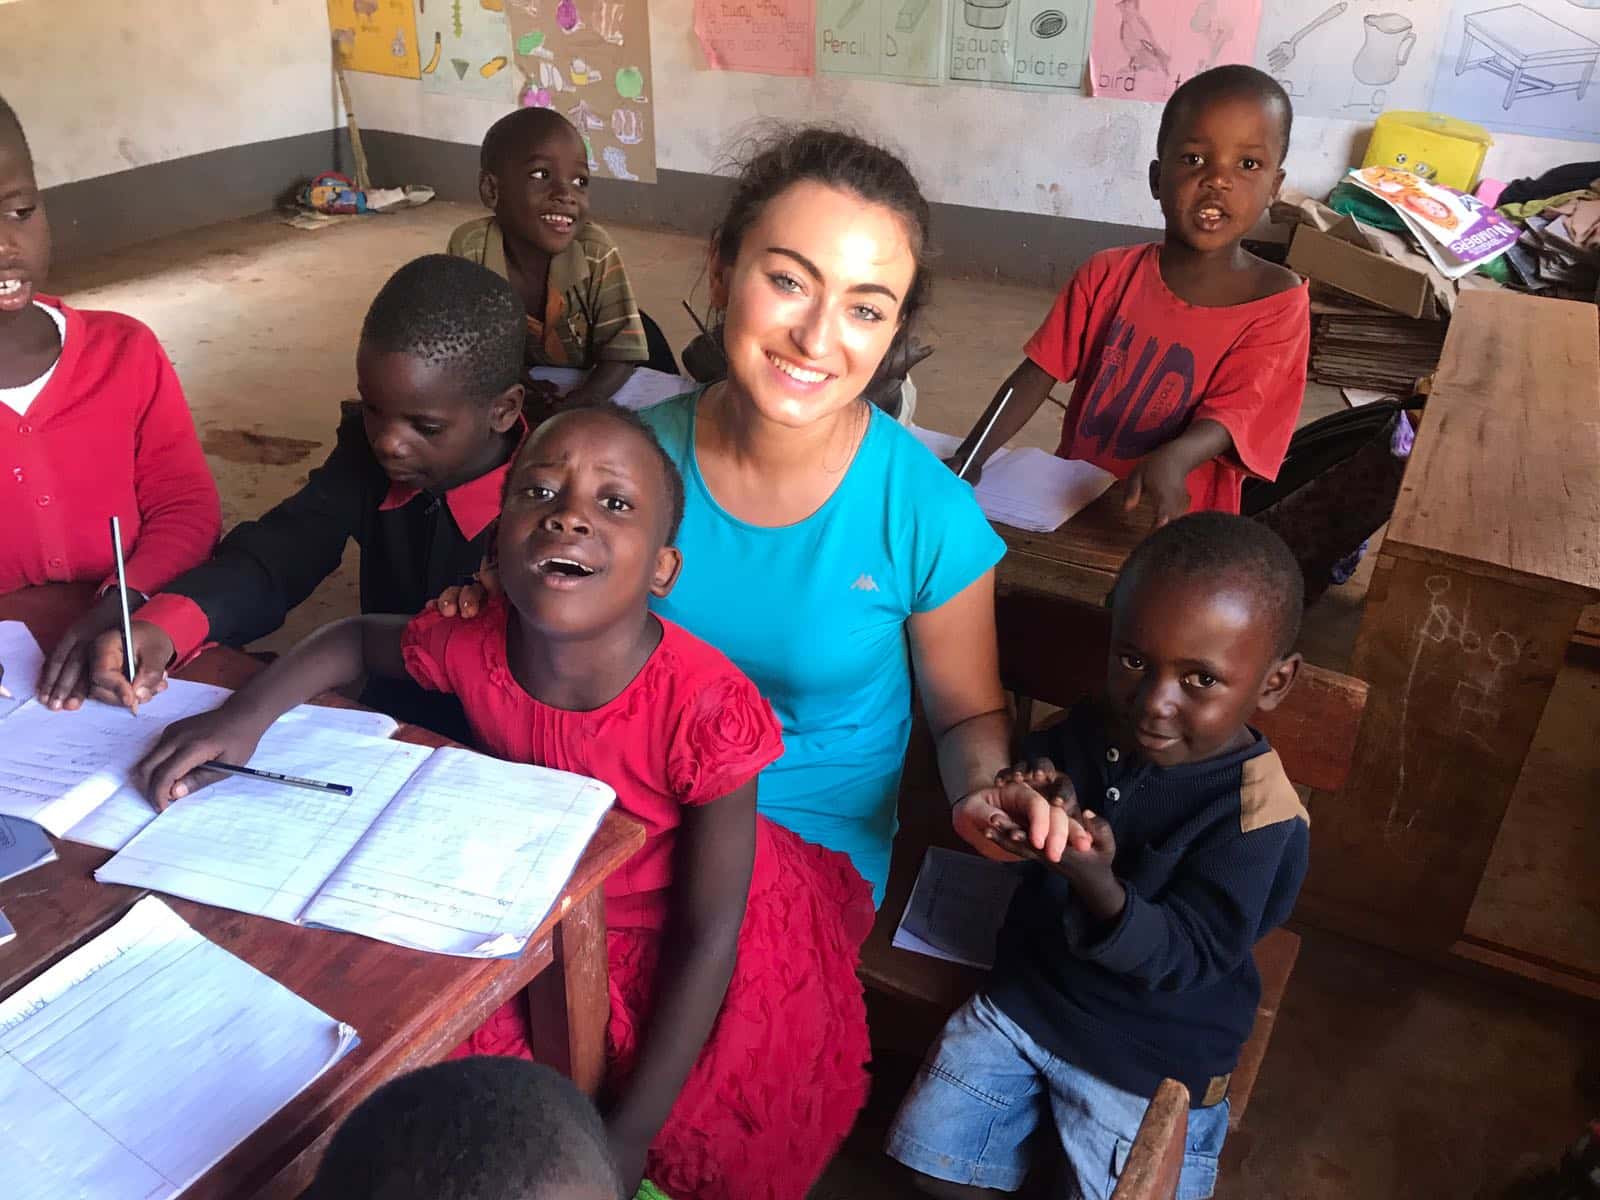 Volontariato internazionale in Uganda nell’educazione e insegnamento